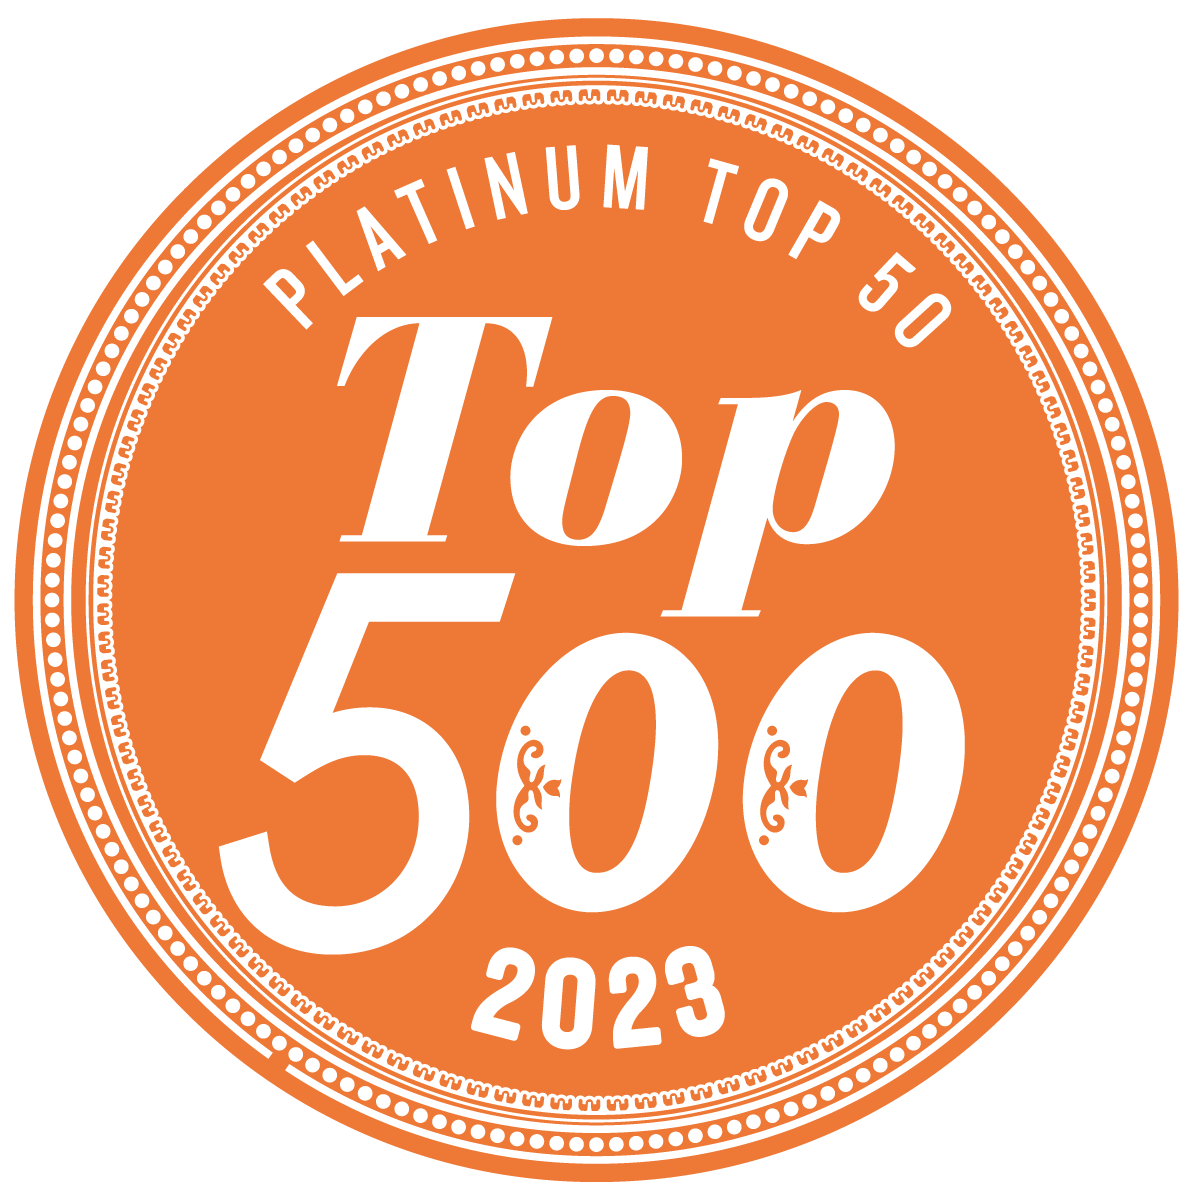 Platinum Top 500